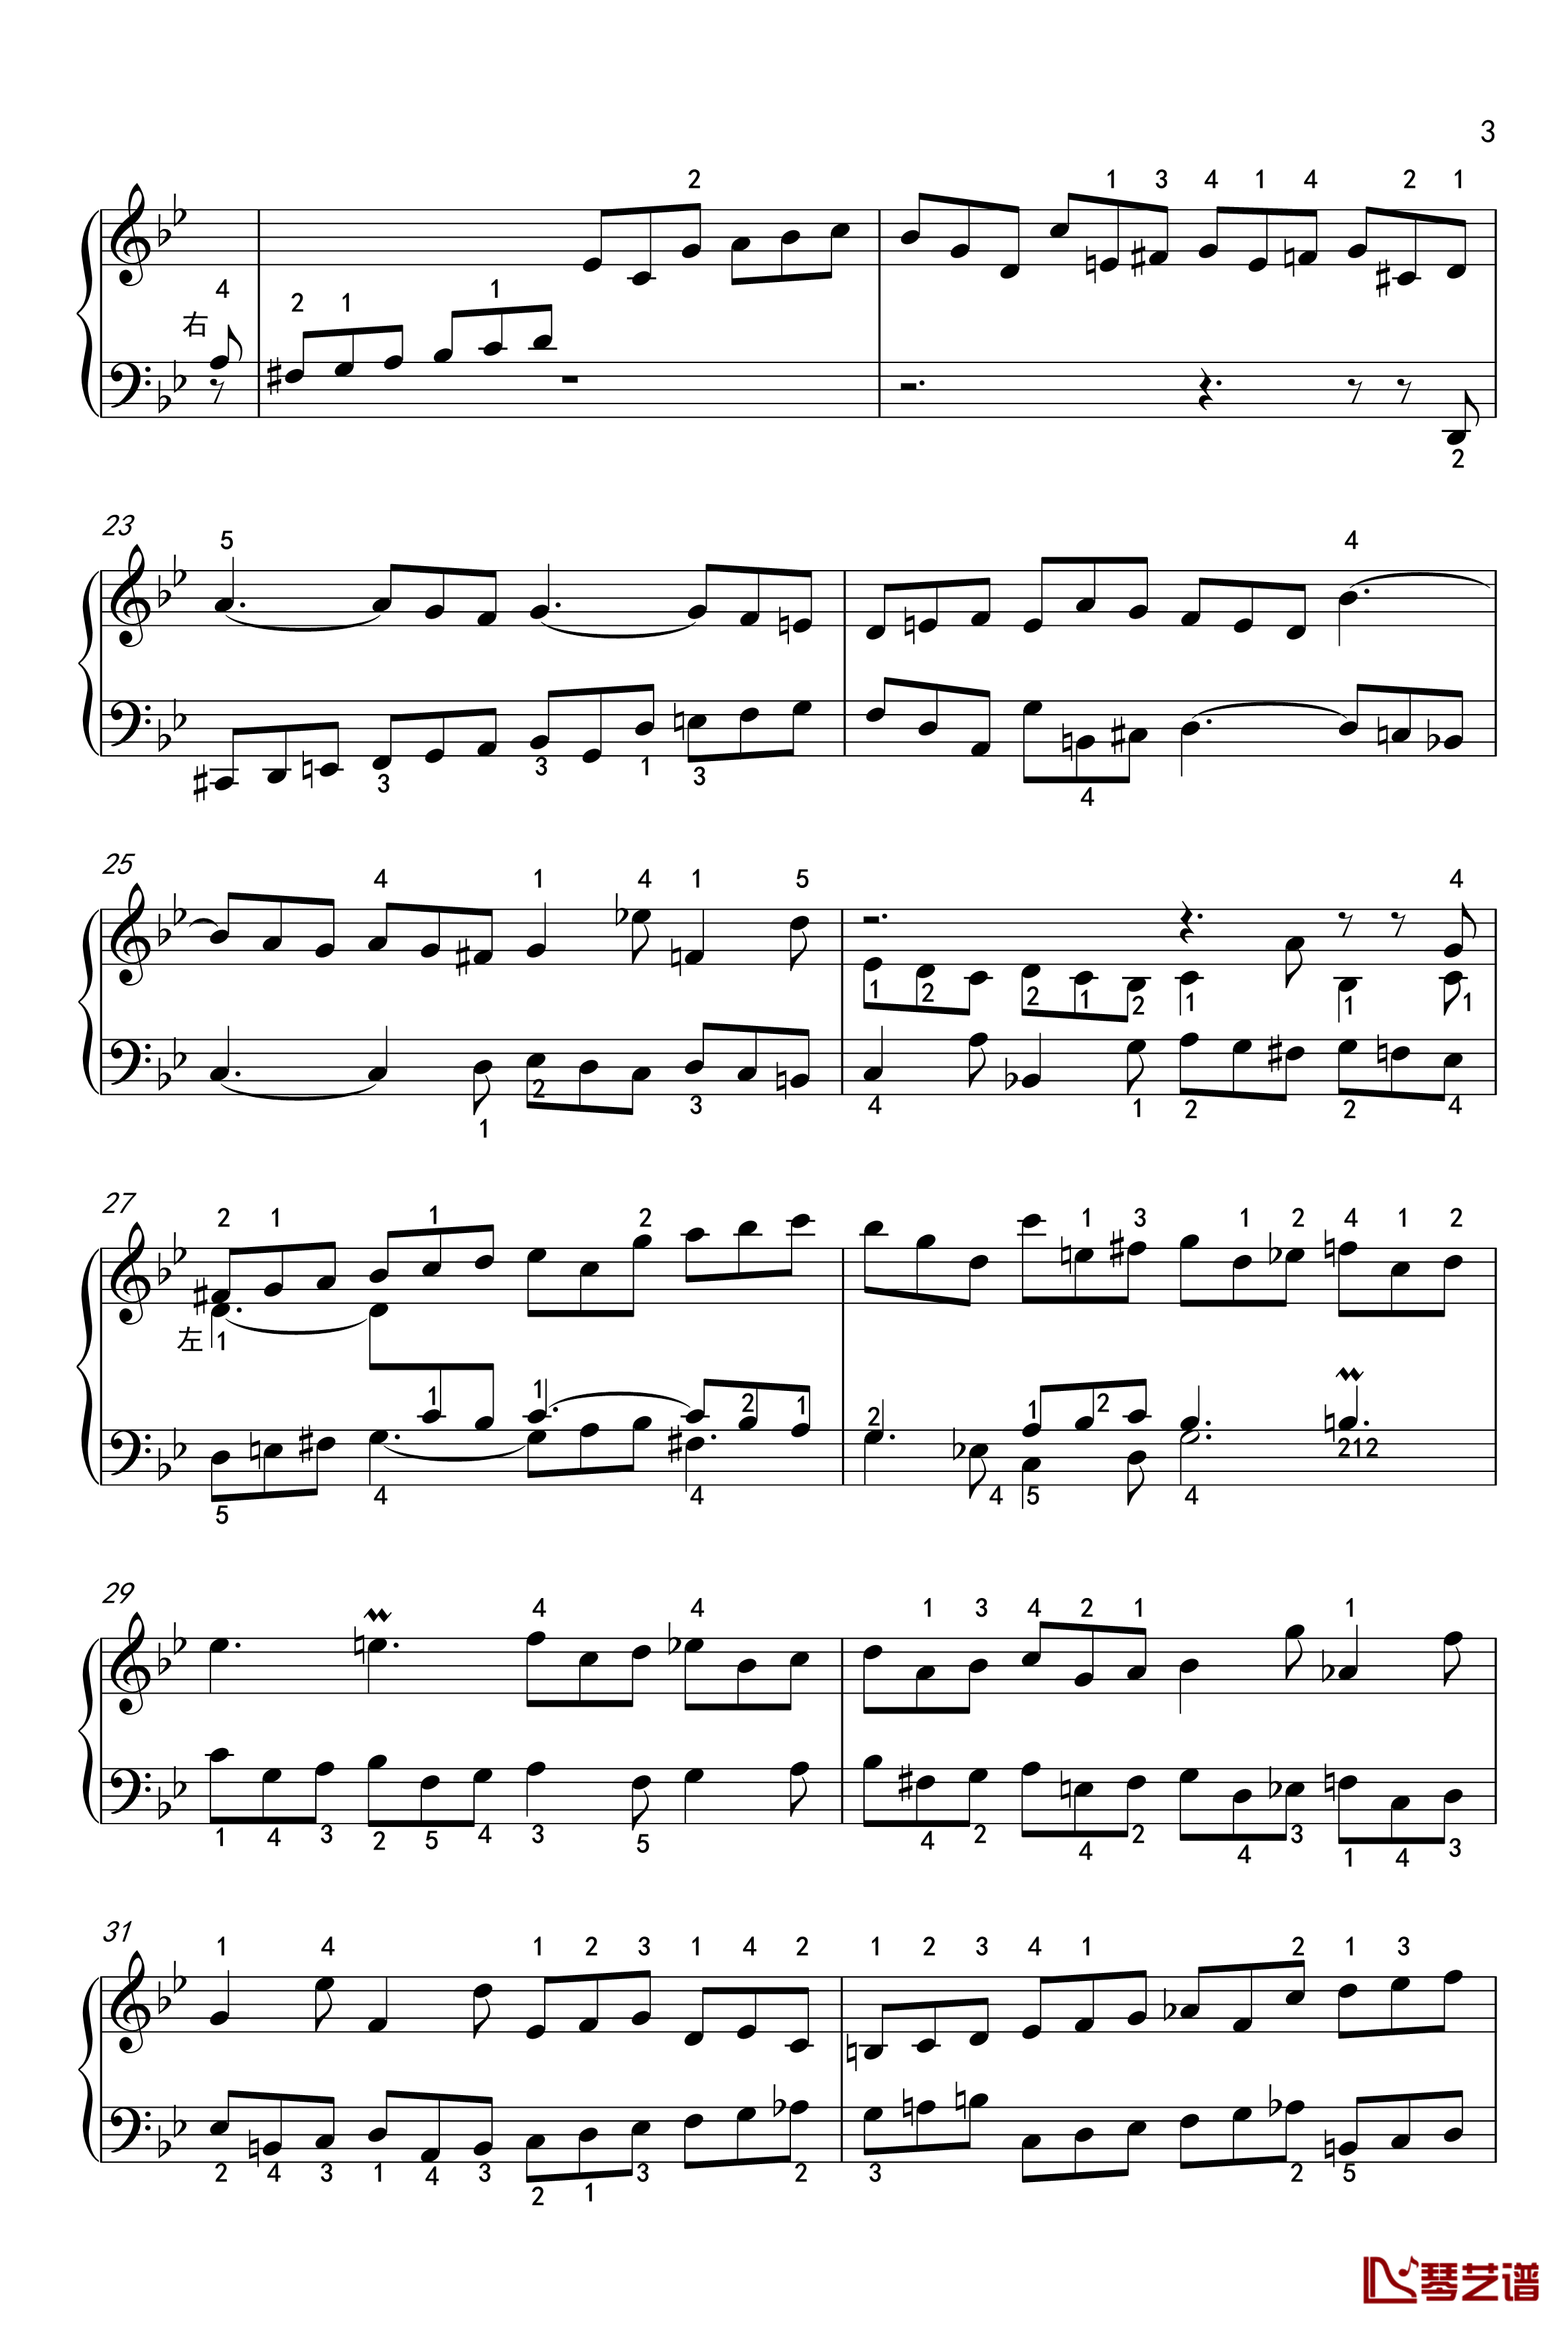 吉格舞曲钢琴谱-英国组曲-BWV-808-7-巴赫-P.E.Bach3